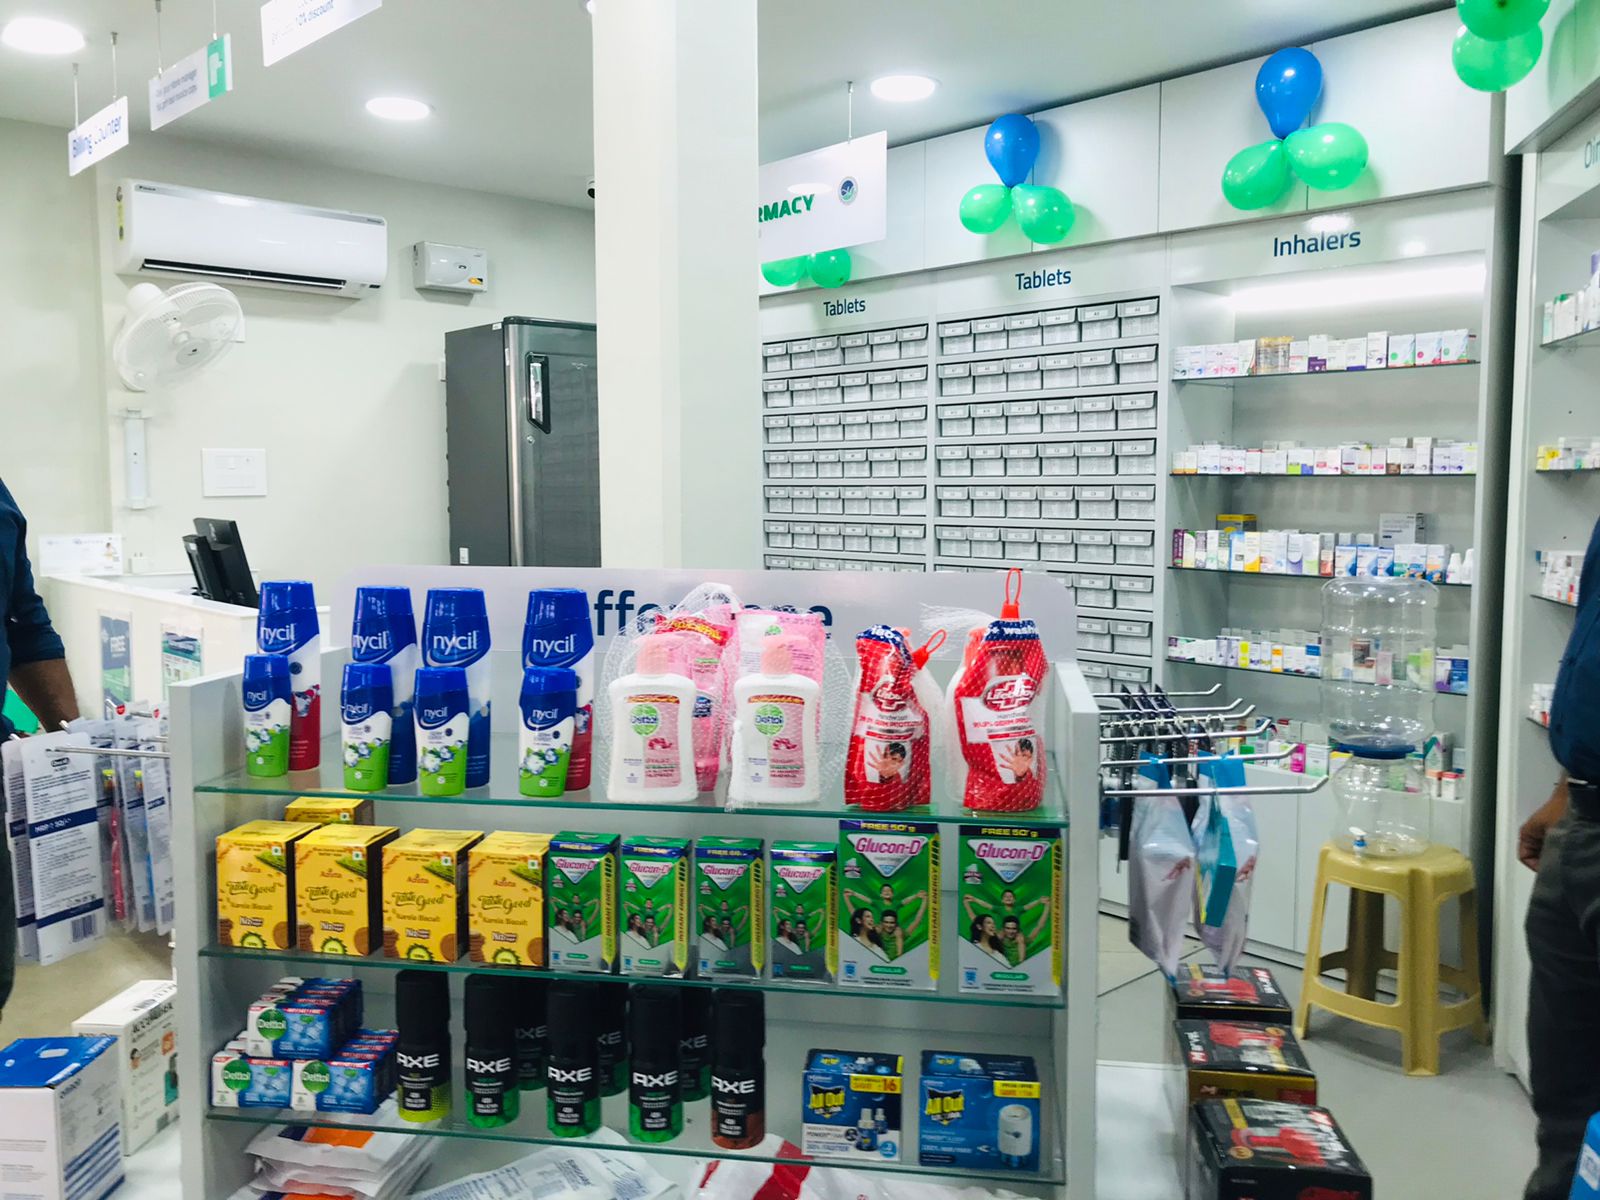 Aster Pharmacy in Kothamangalam, Ernakulam